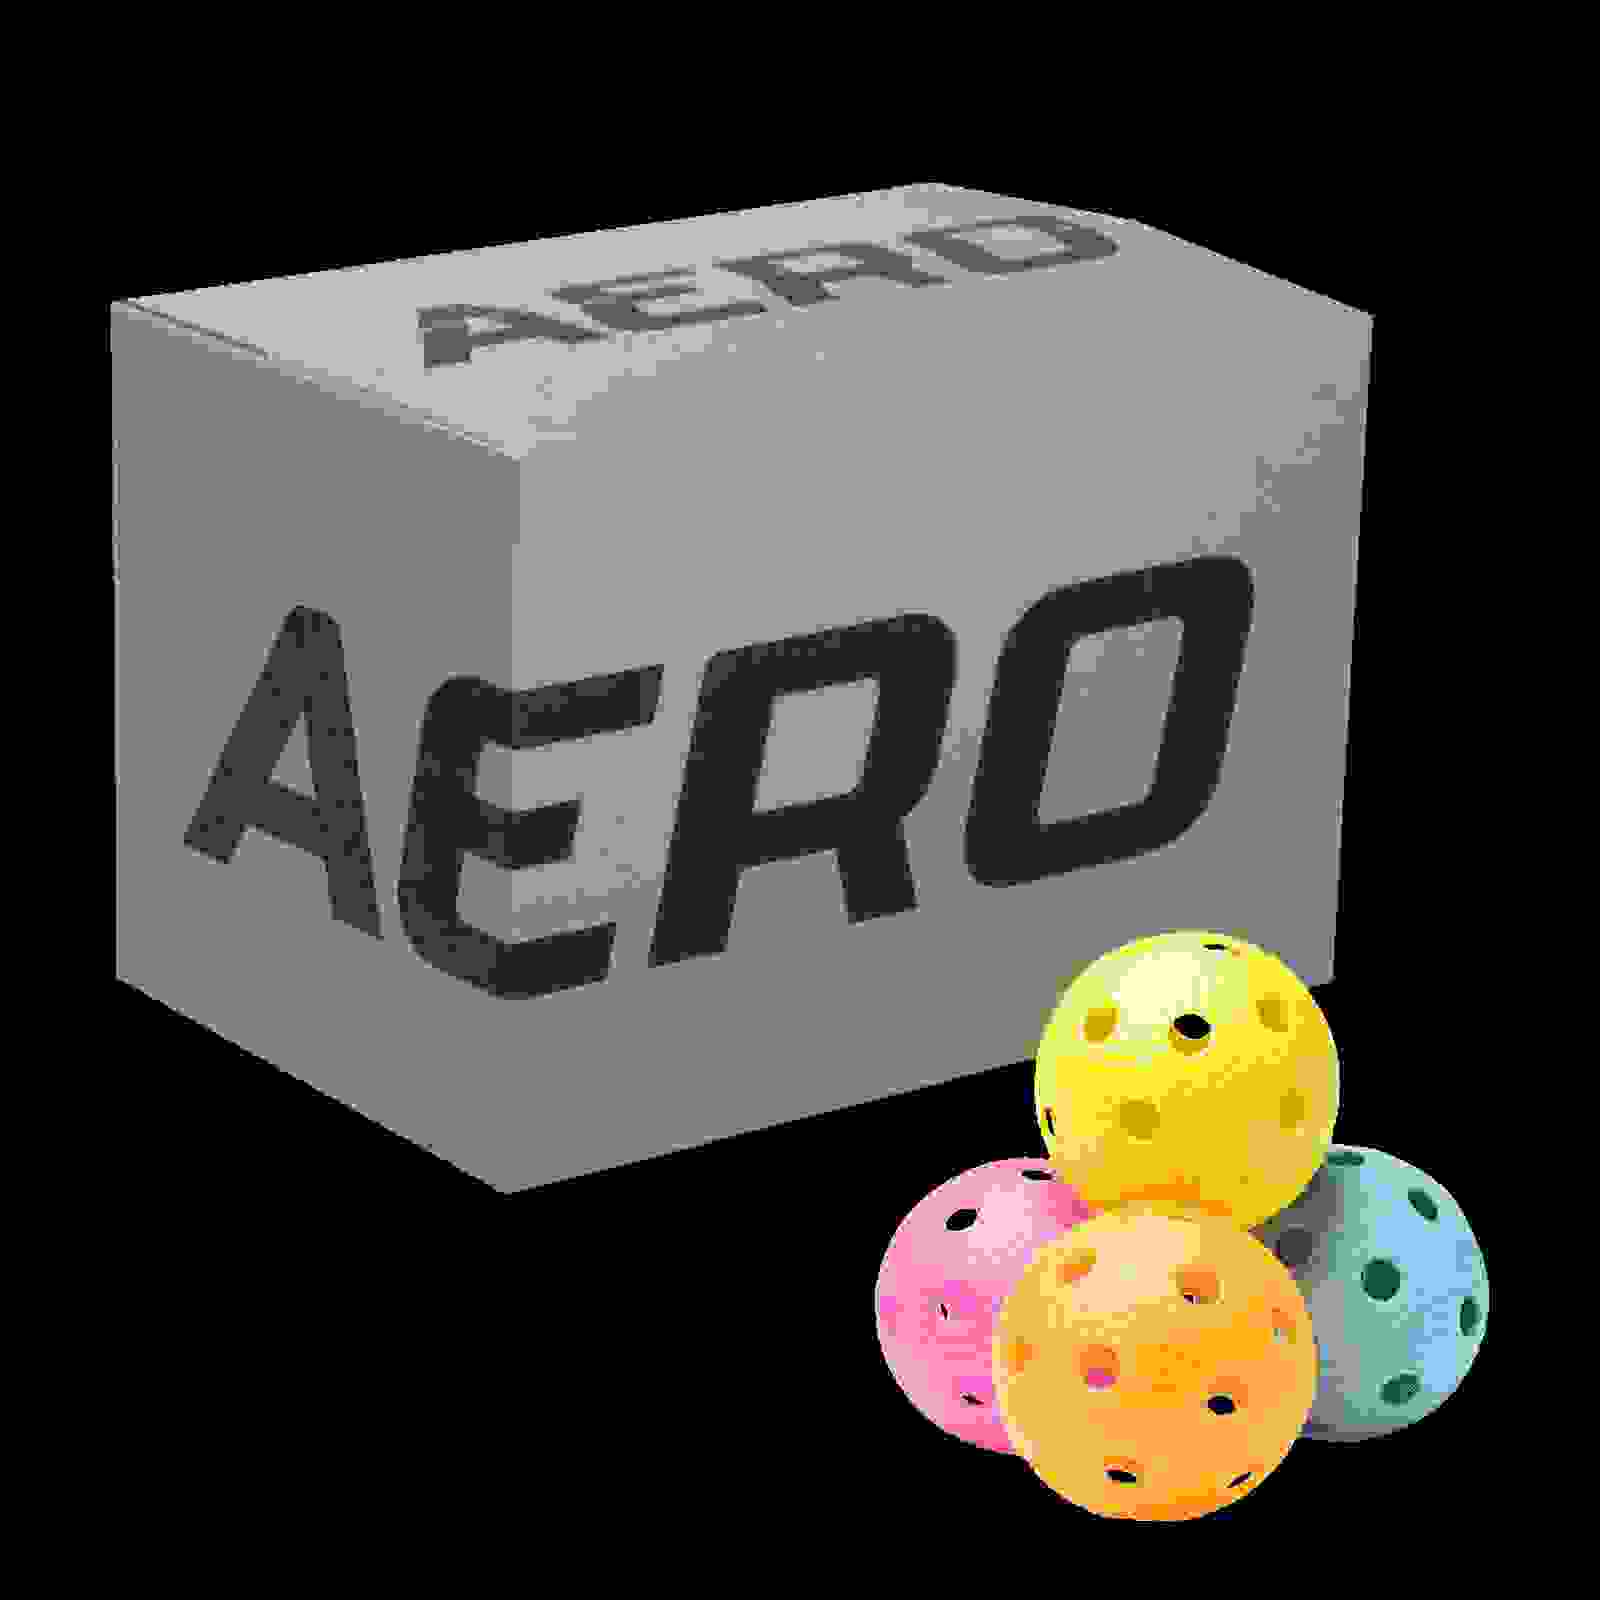 Aero Floorball 200 pcs Mix